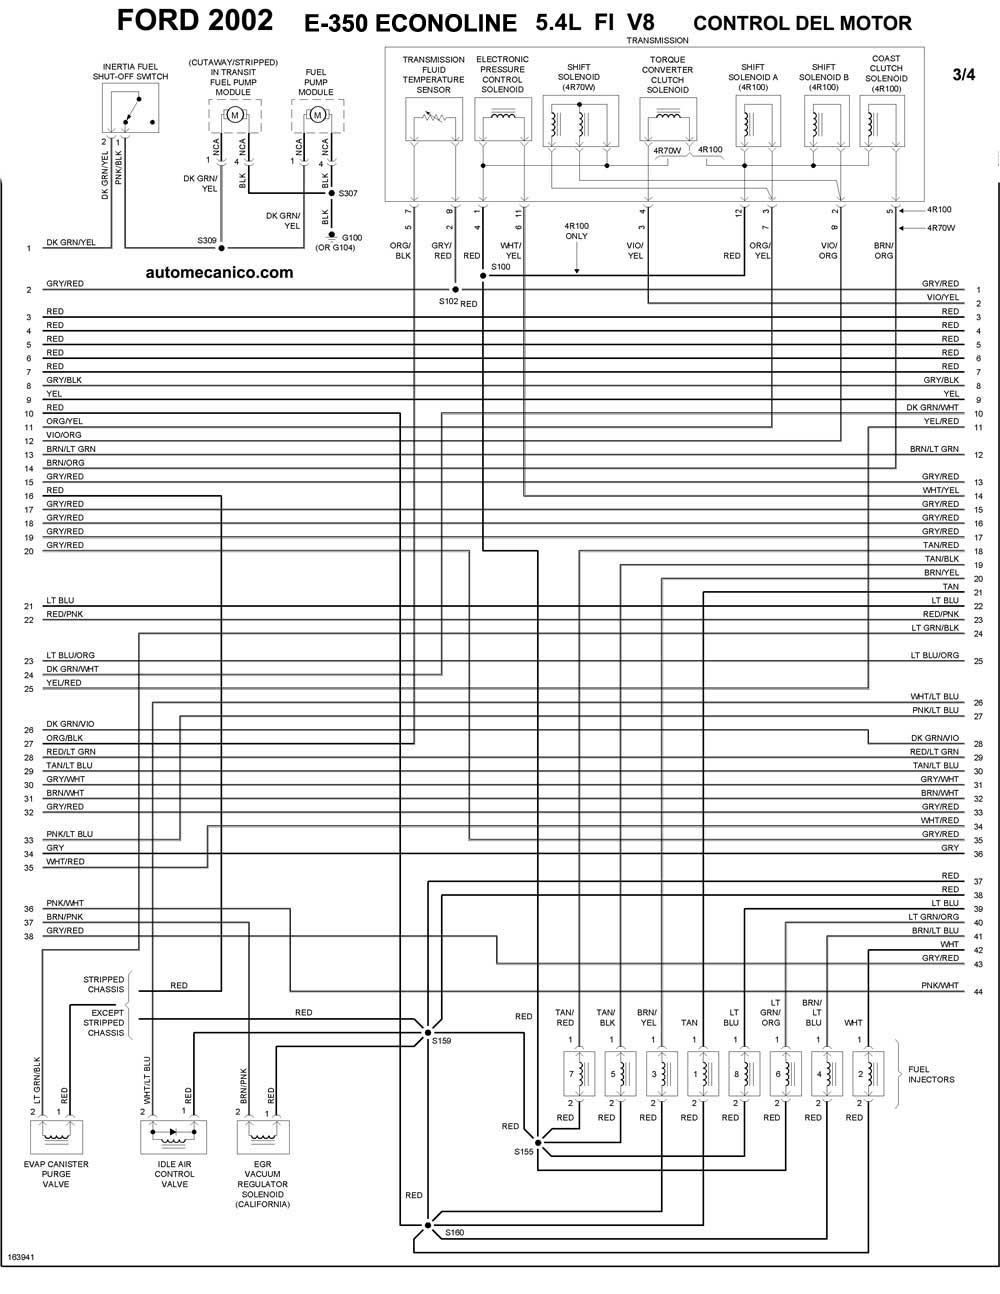 FORD - Diagramas control del motor 2002 - Graphics - Esquemas | Vehiculos -  Motores - Componentes | Mecanica automotriz